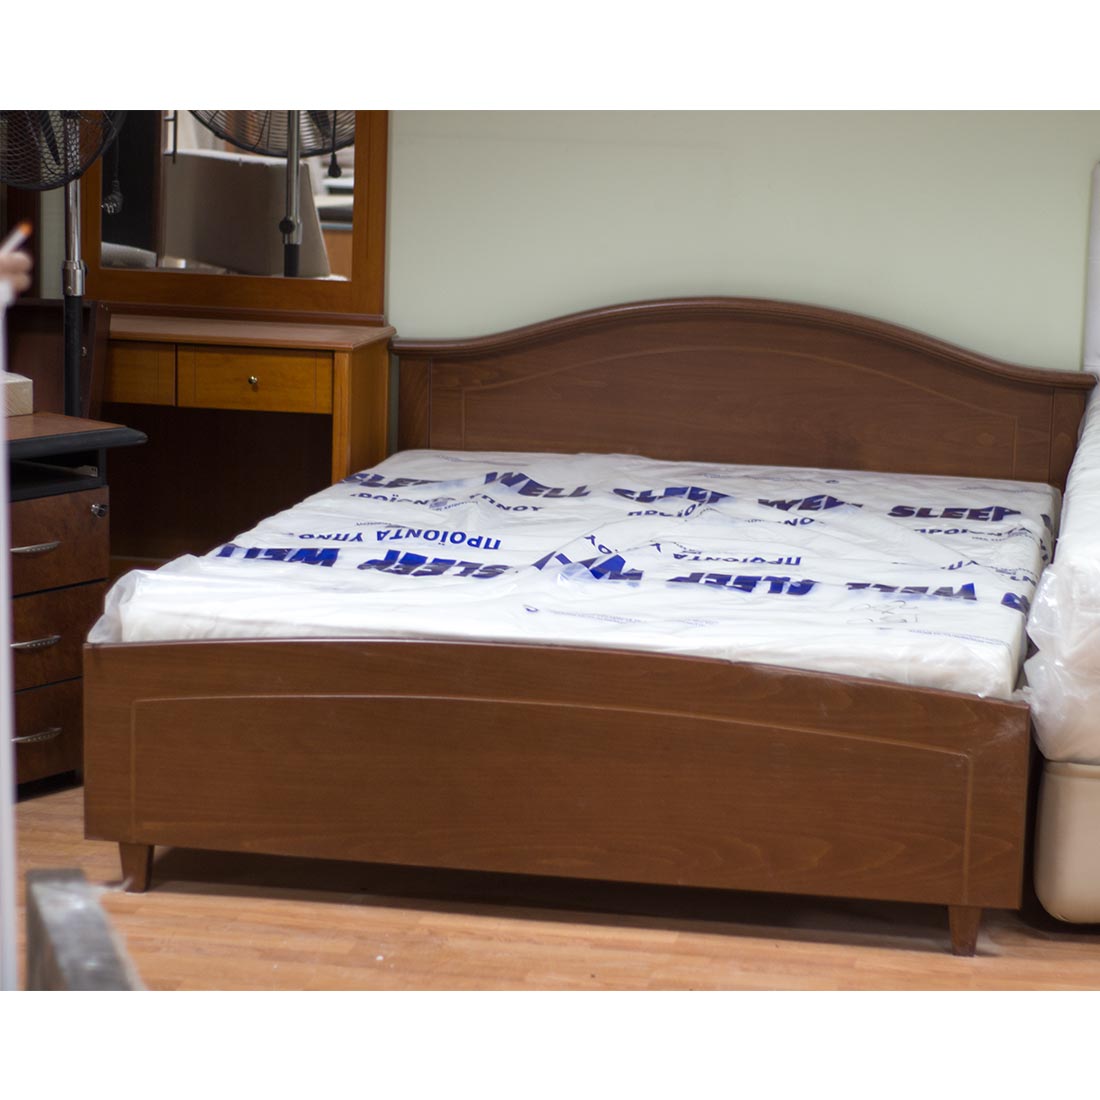 Κρεβάτι διπλό 158x210x88 με περισπωμένη σε κερασί απόχρωση με στρώμα